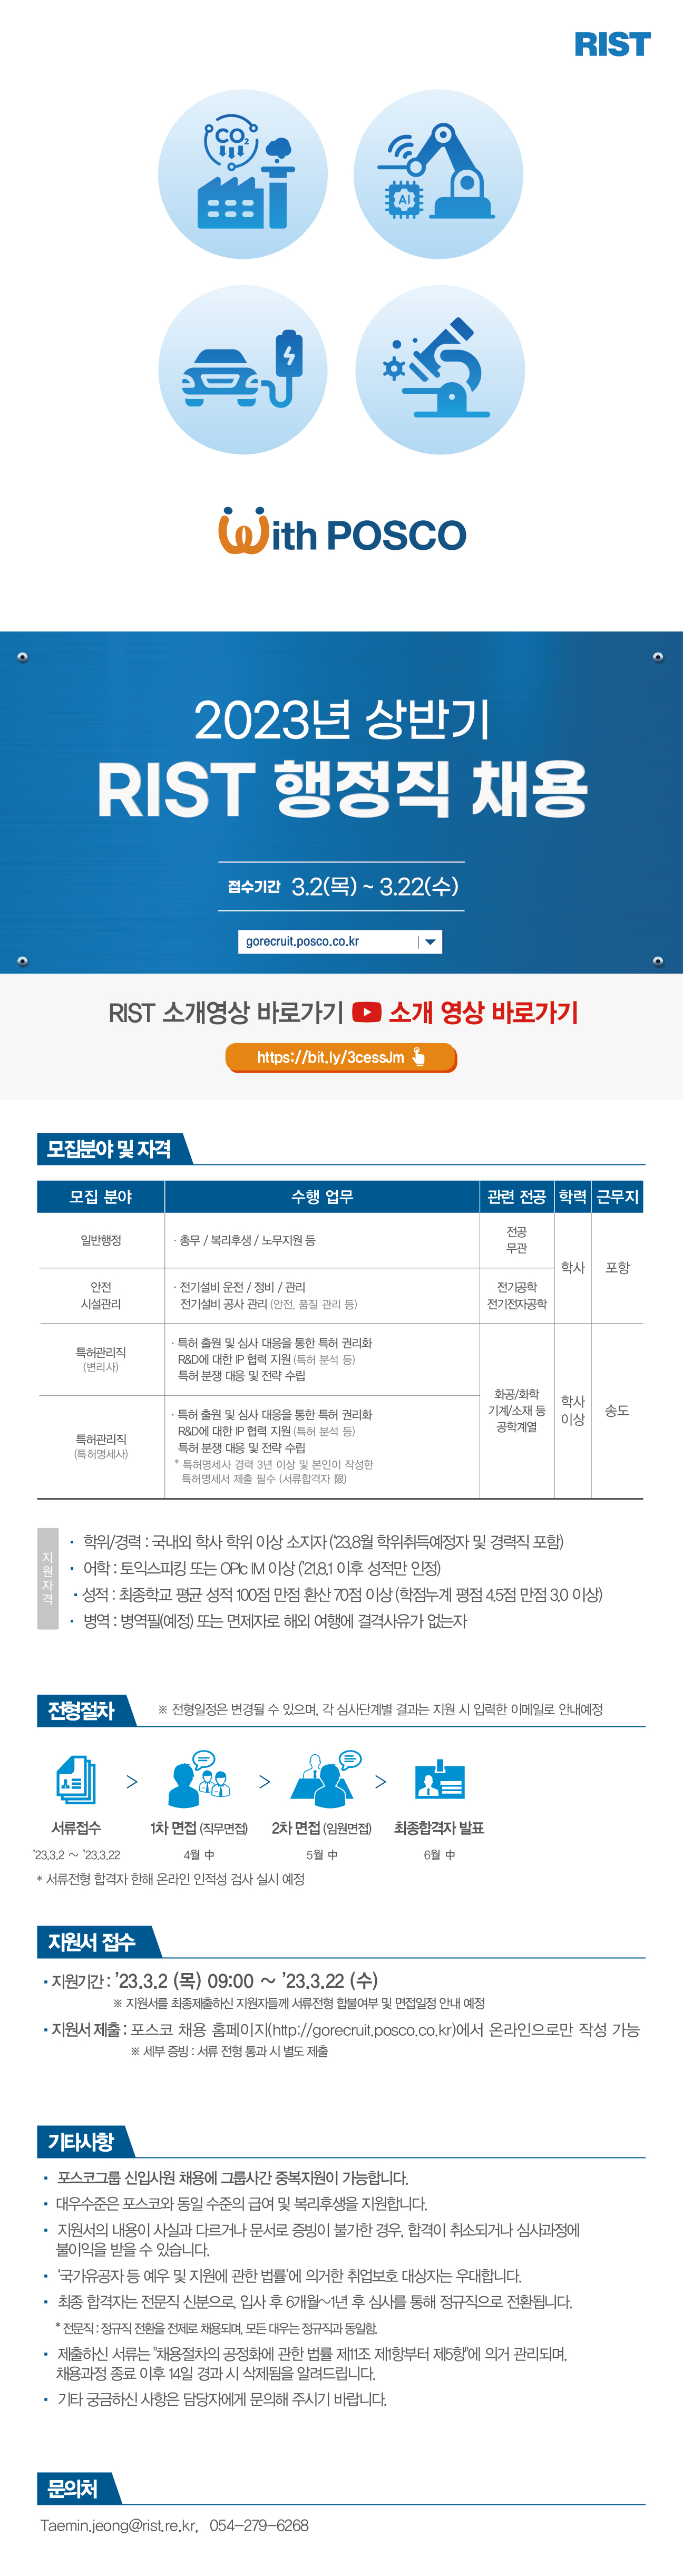 2023 RIST 상반기 공개 채용 웹플라이어_행정직 채용__중복지원 변경.jpg